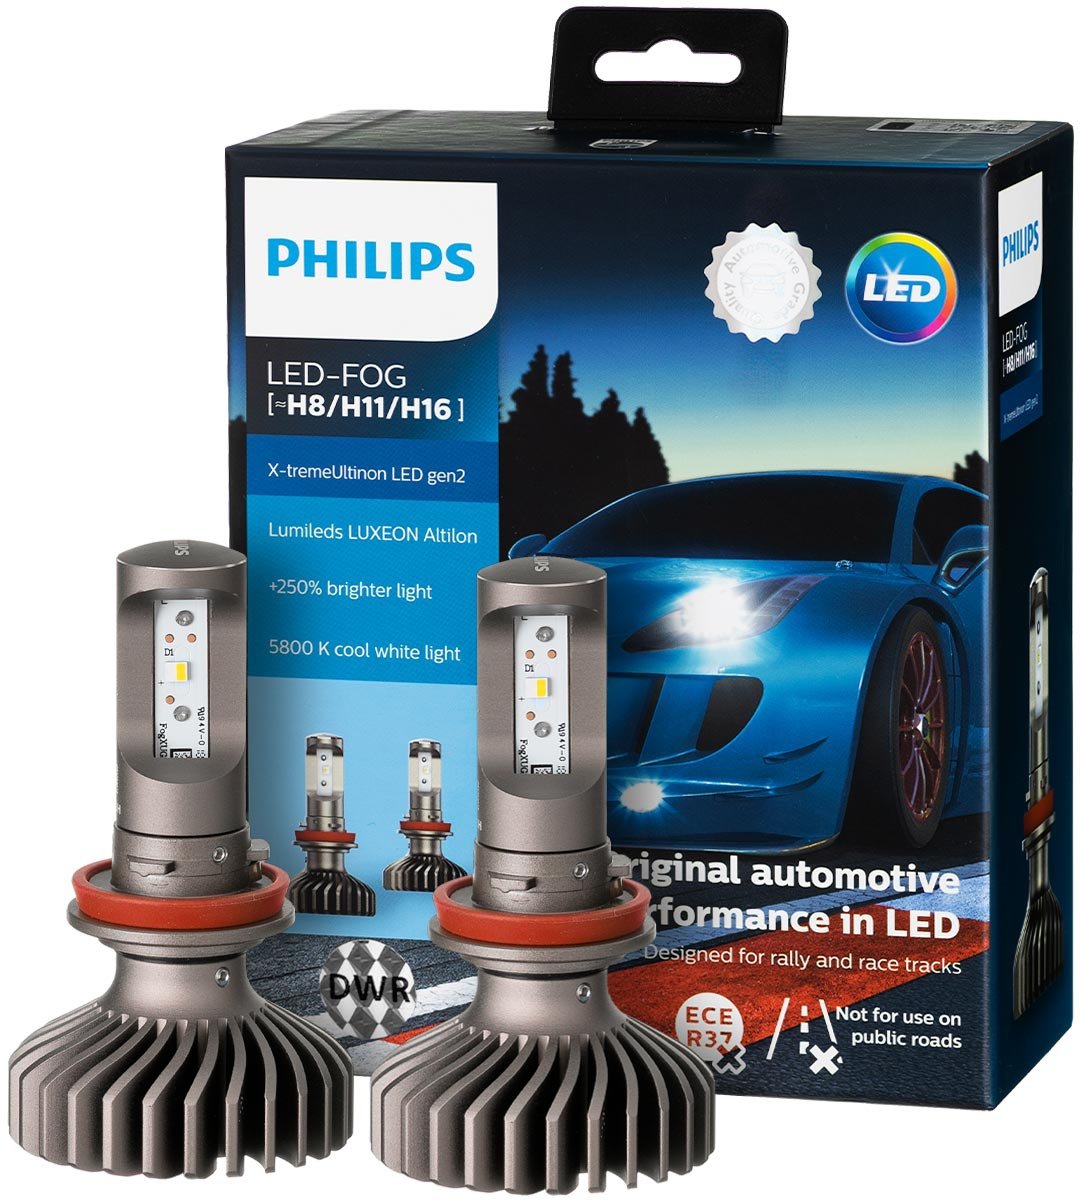 Филипс h11. Philips led Fog h8/h11/h16. Лампа h8 led Philips. Лампочки Philips led Fog h8/h11/h16. Philips h8/h11/h16 Ultinon Essential.